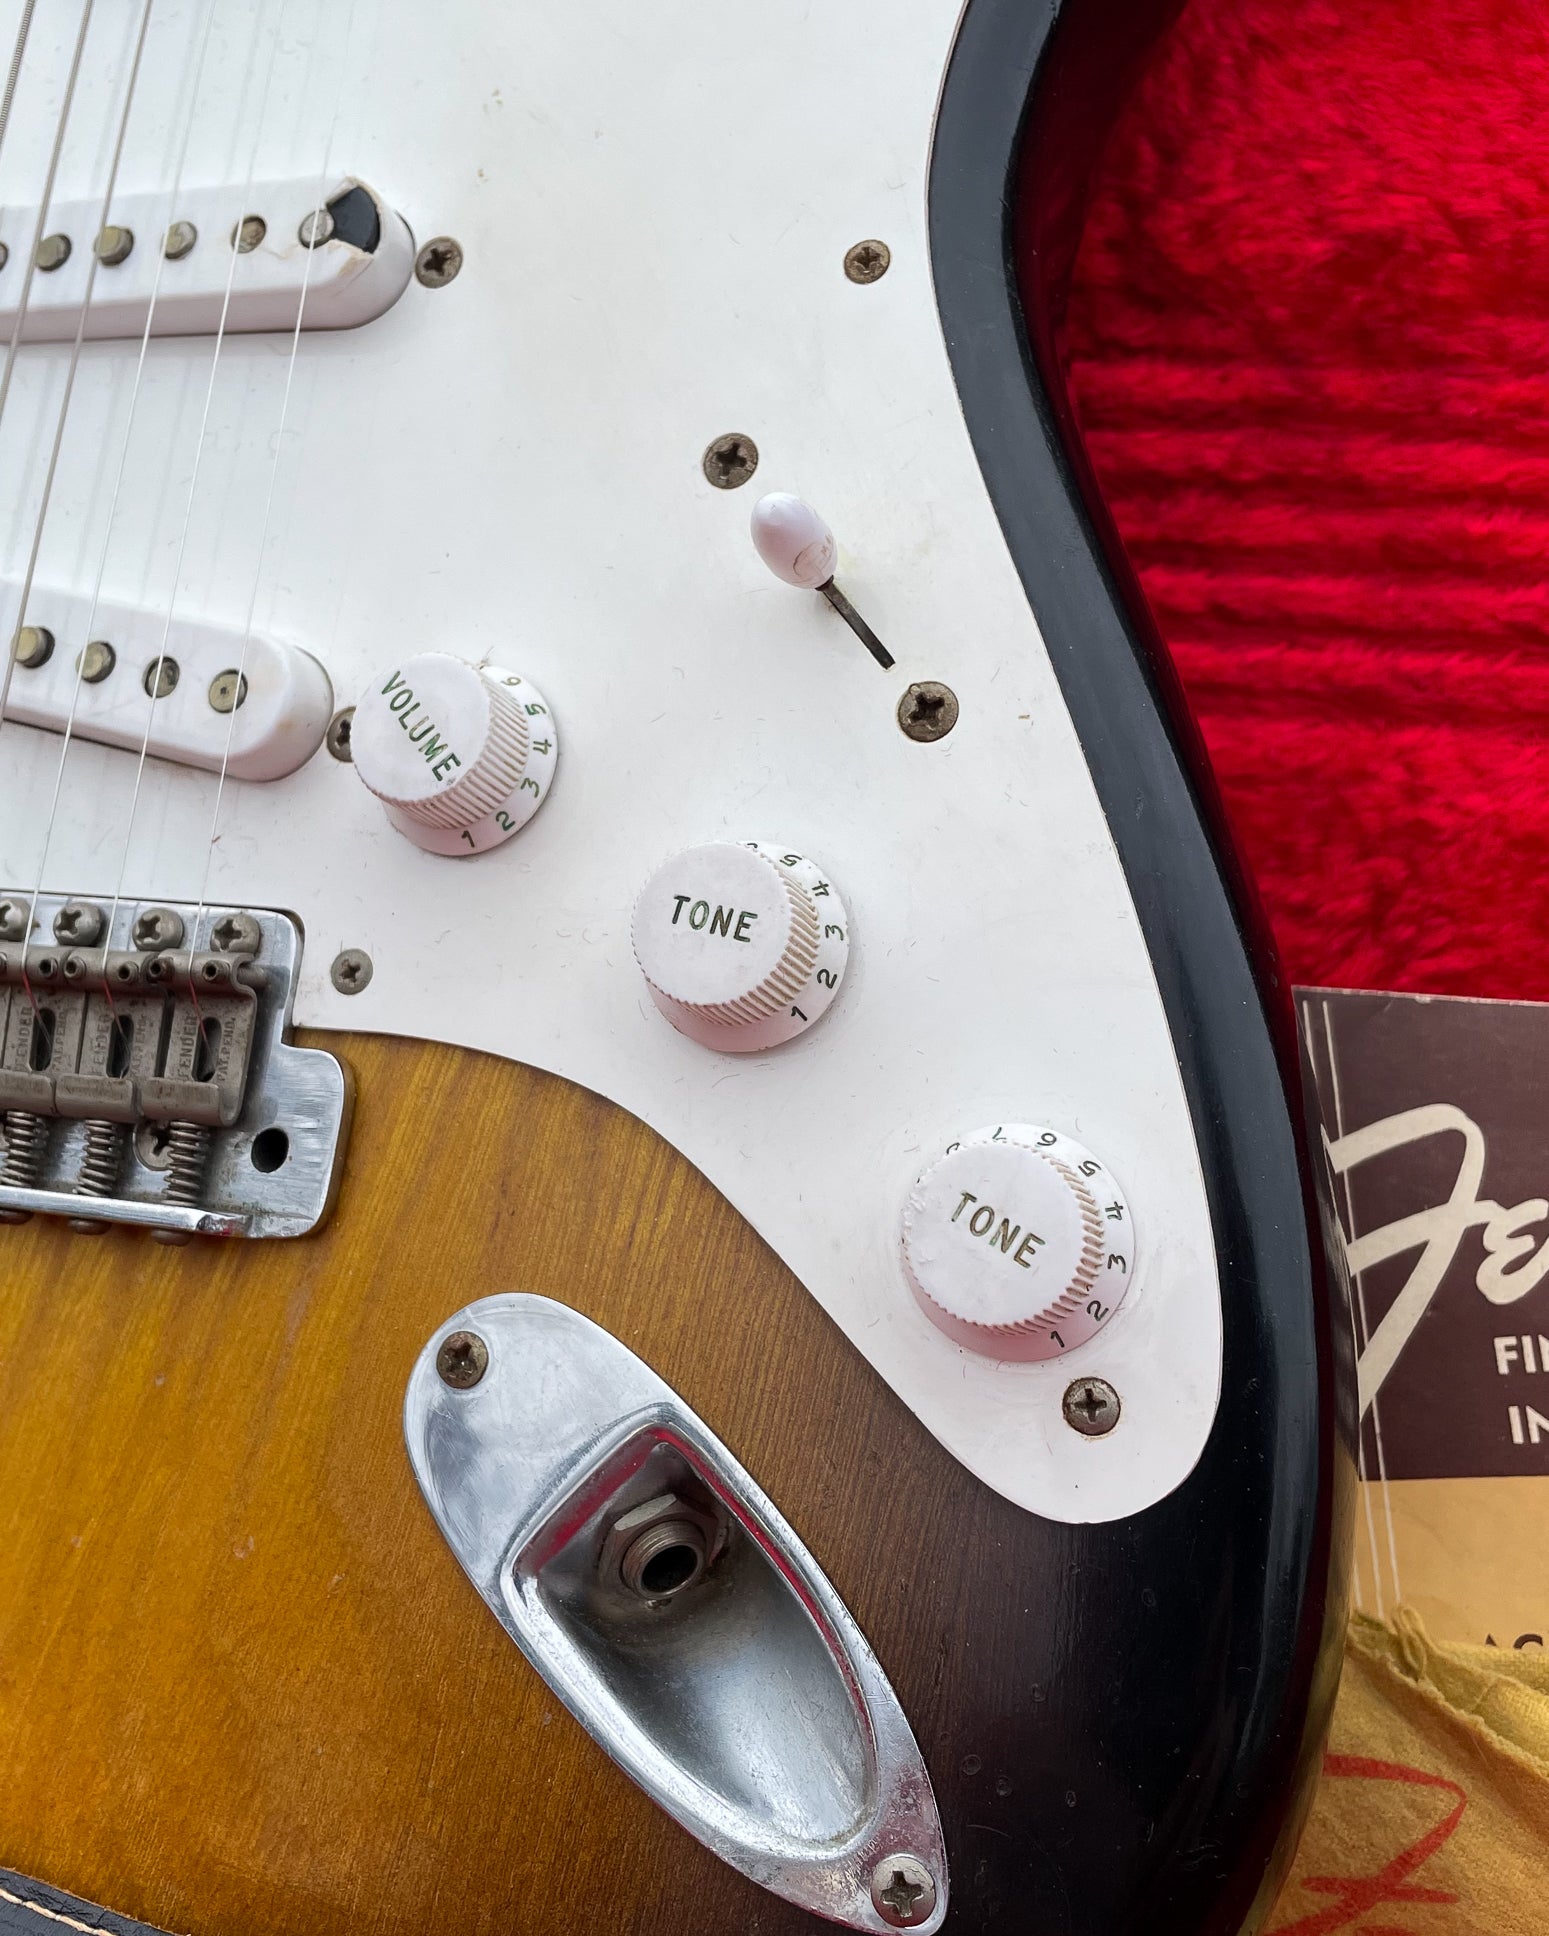 Fender Stratocaster 1954 with short skirt knobs